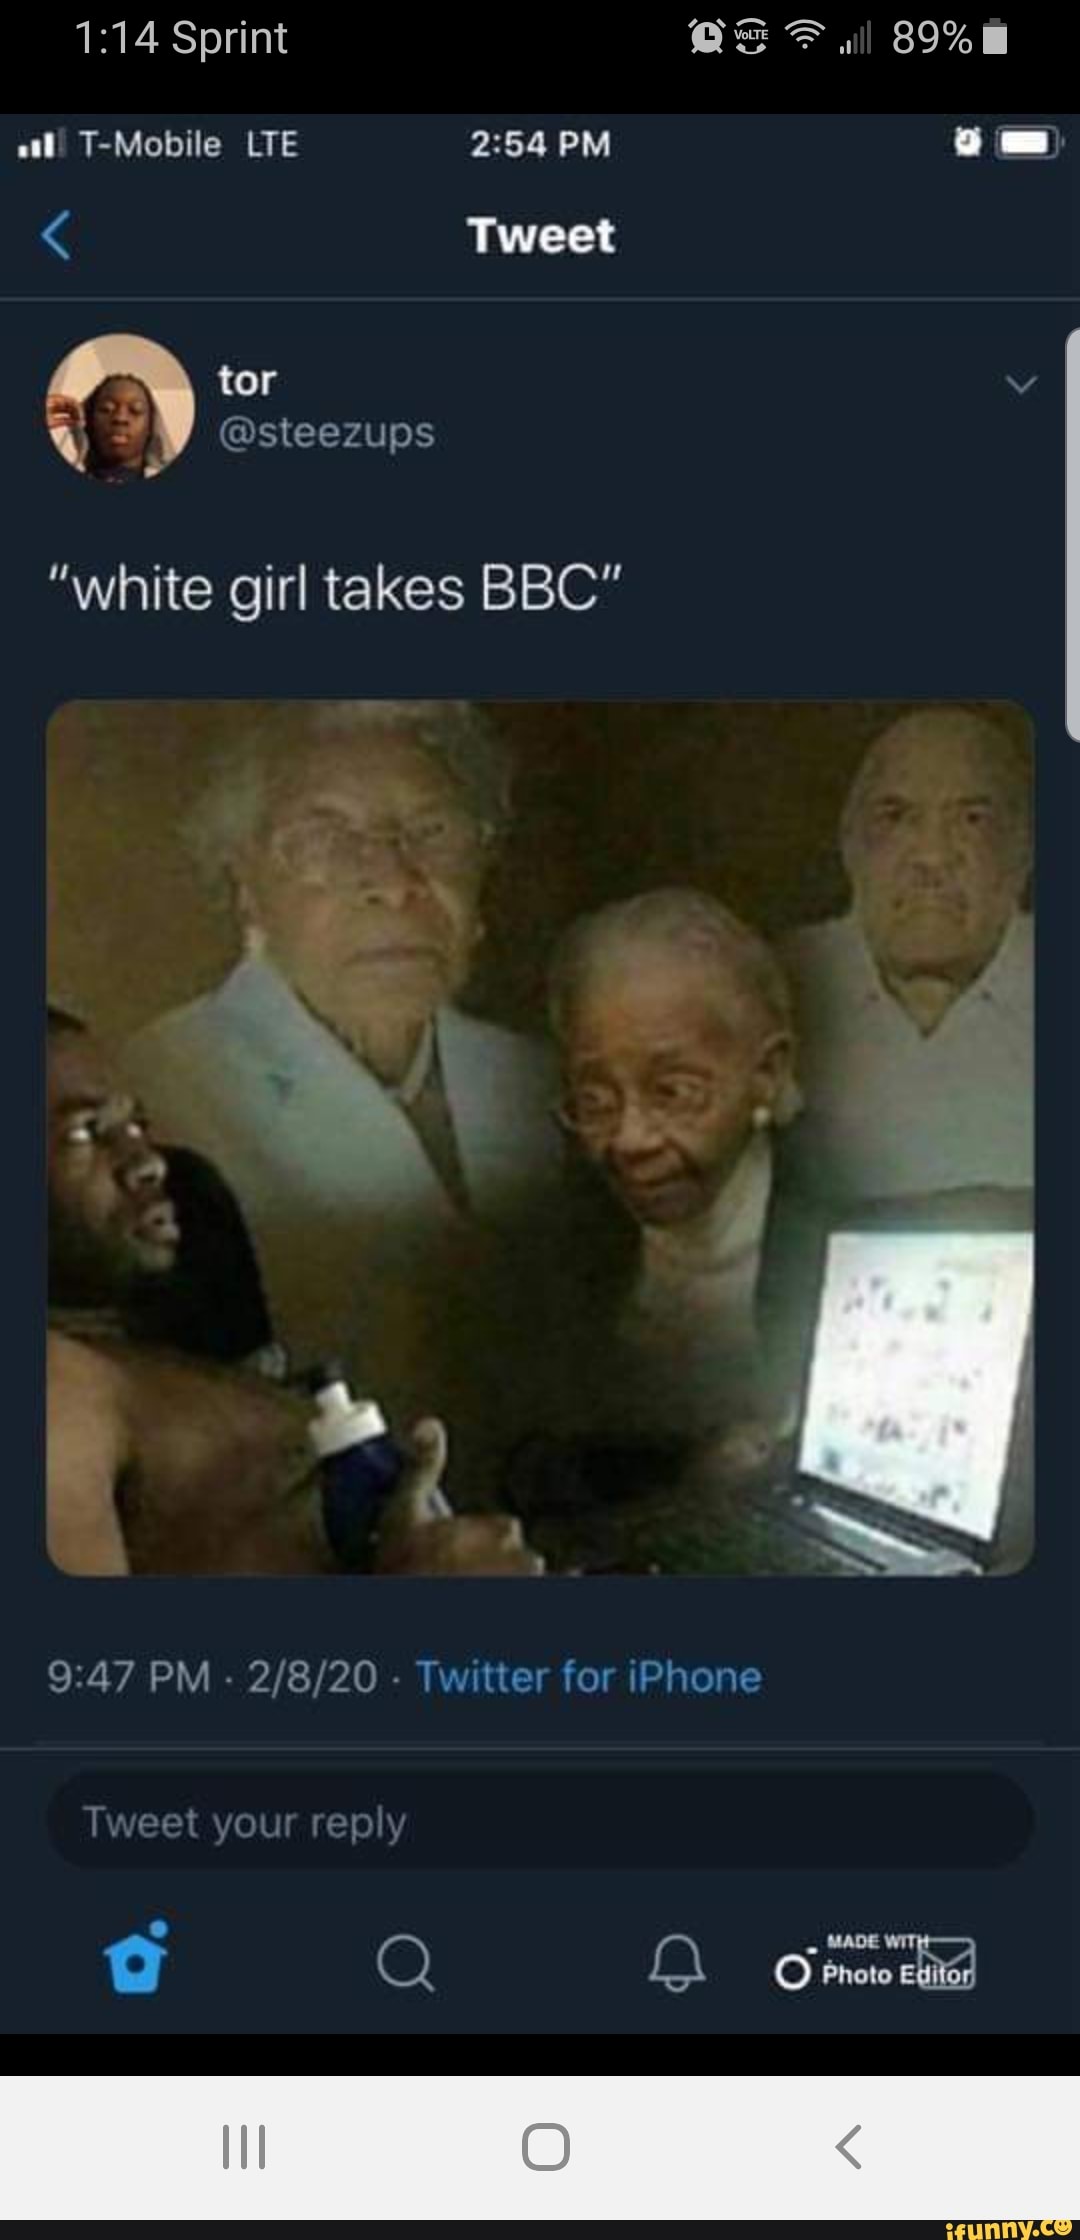 Bbc in white girl